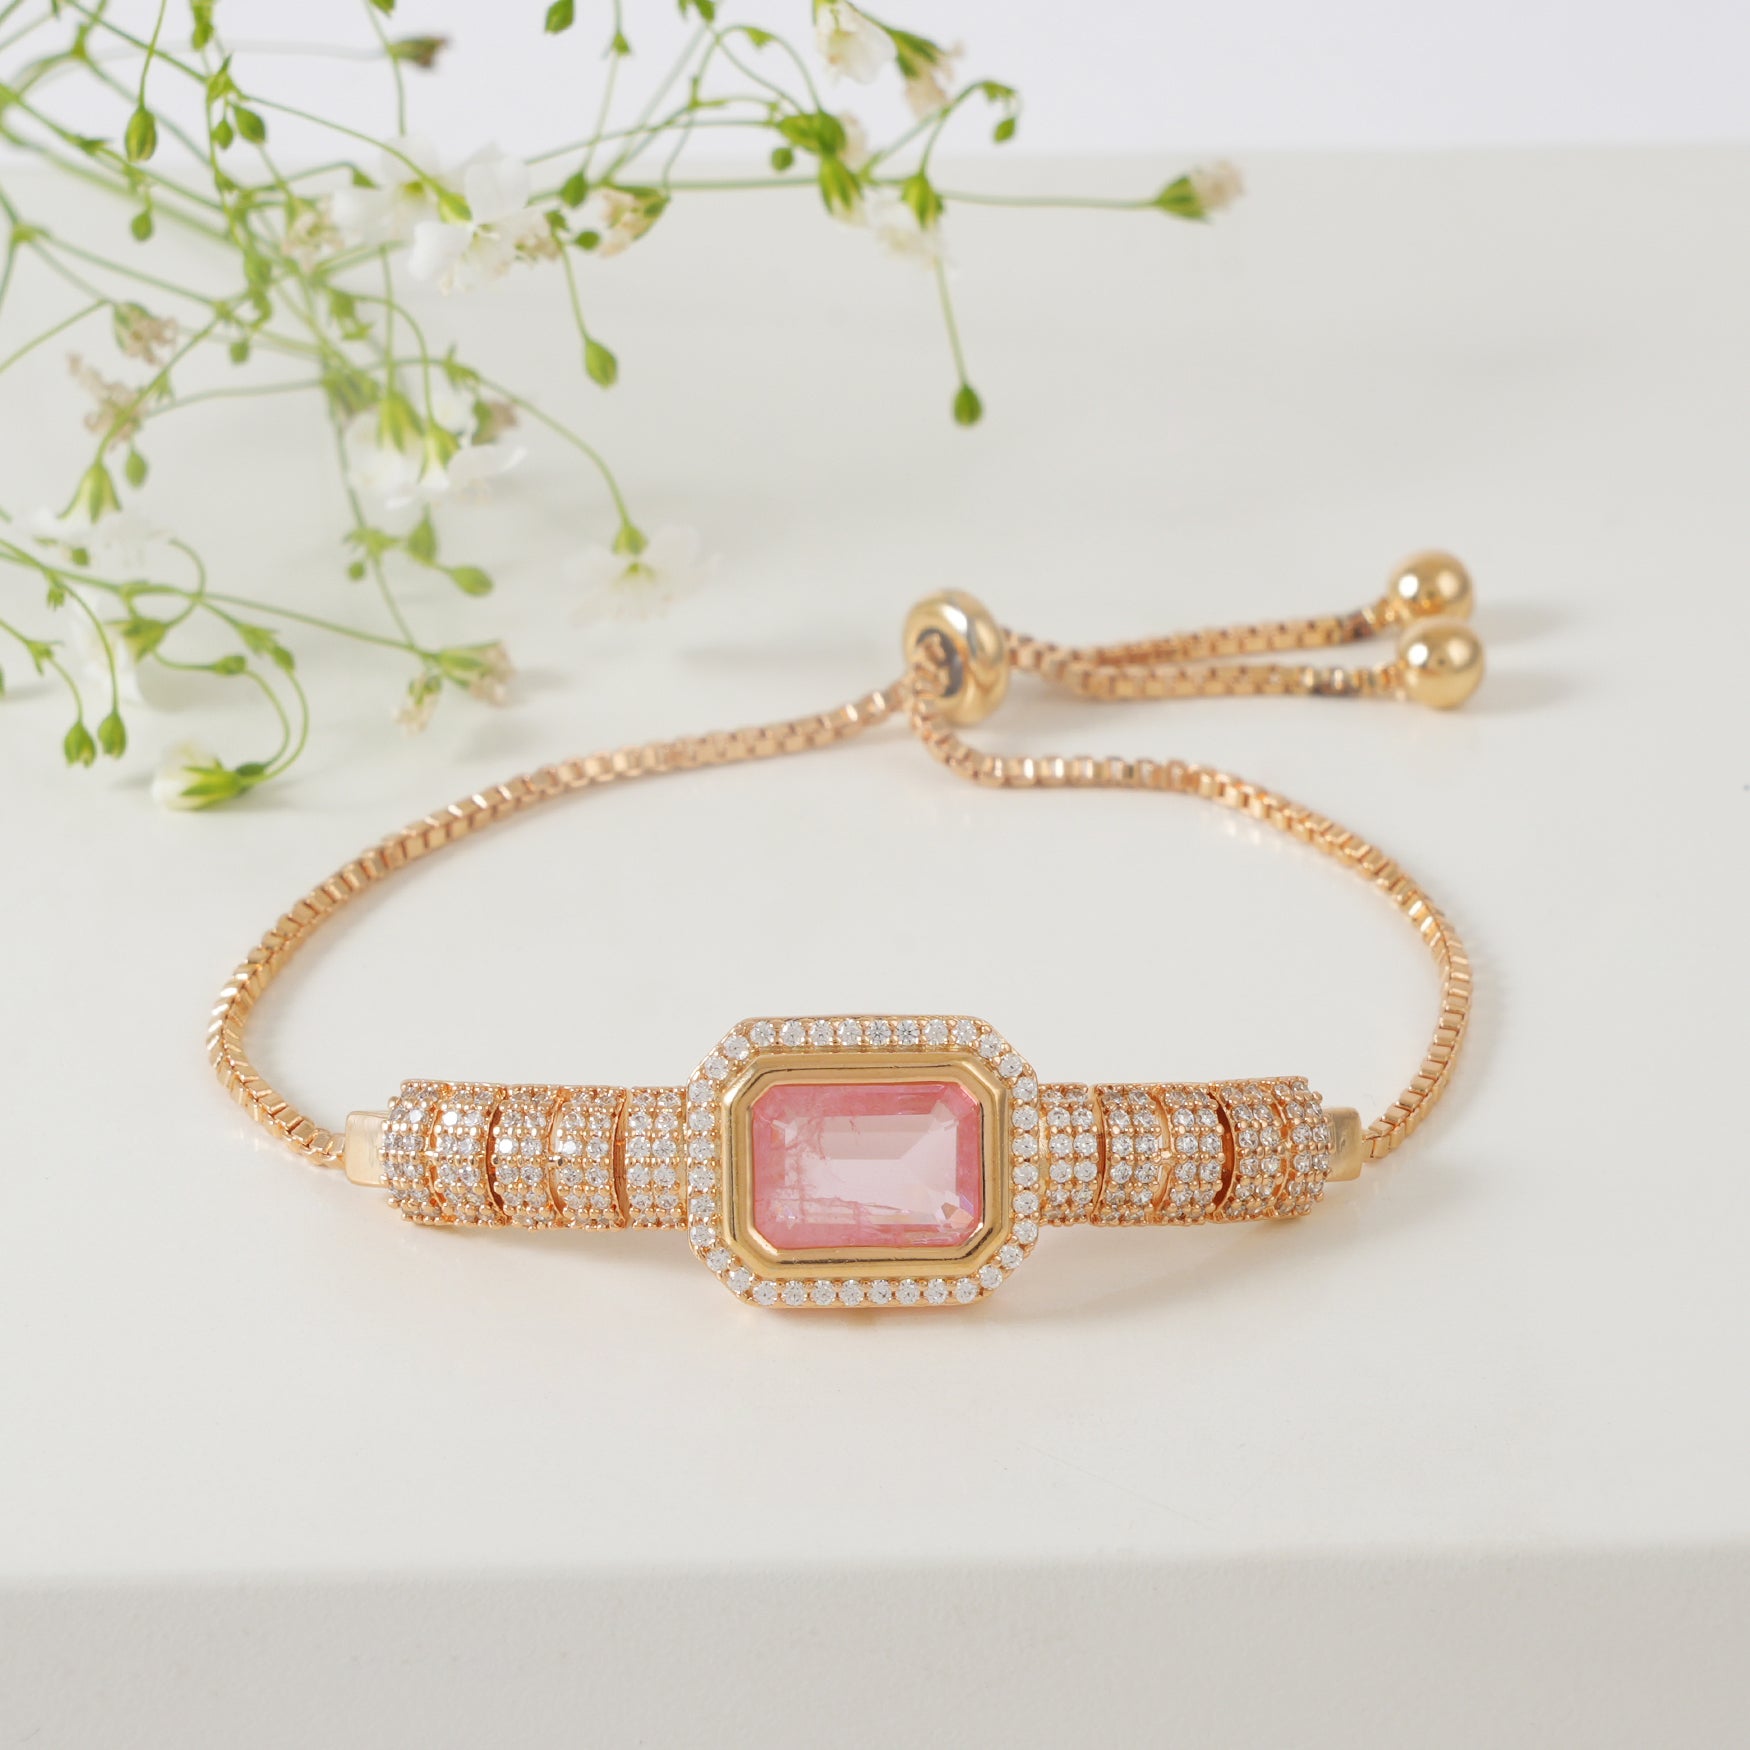 Stunning diamond stone bracelet for women